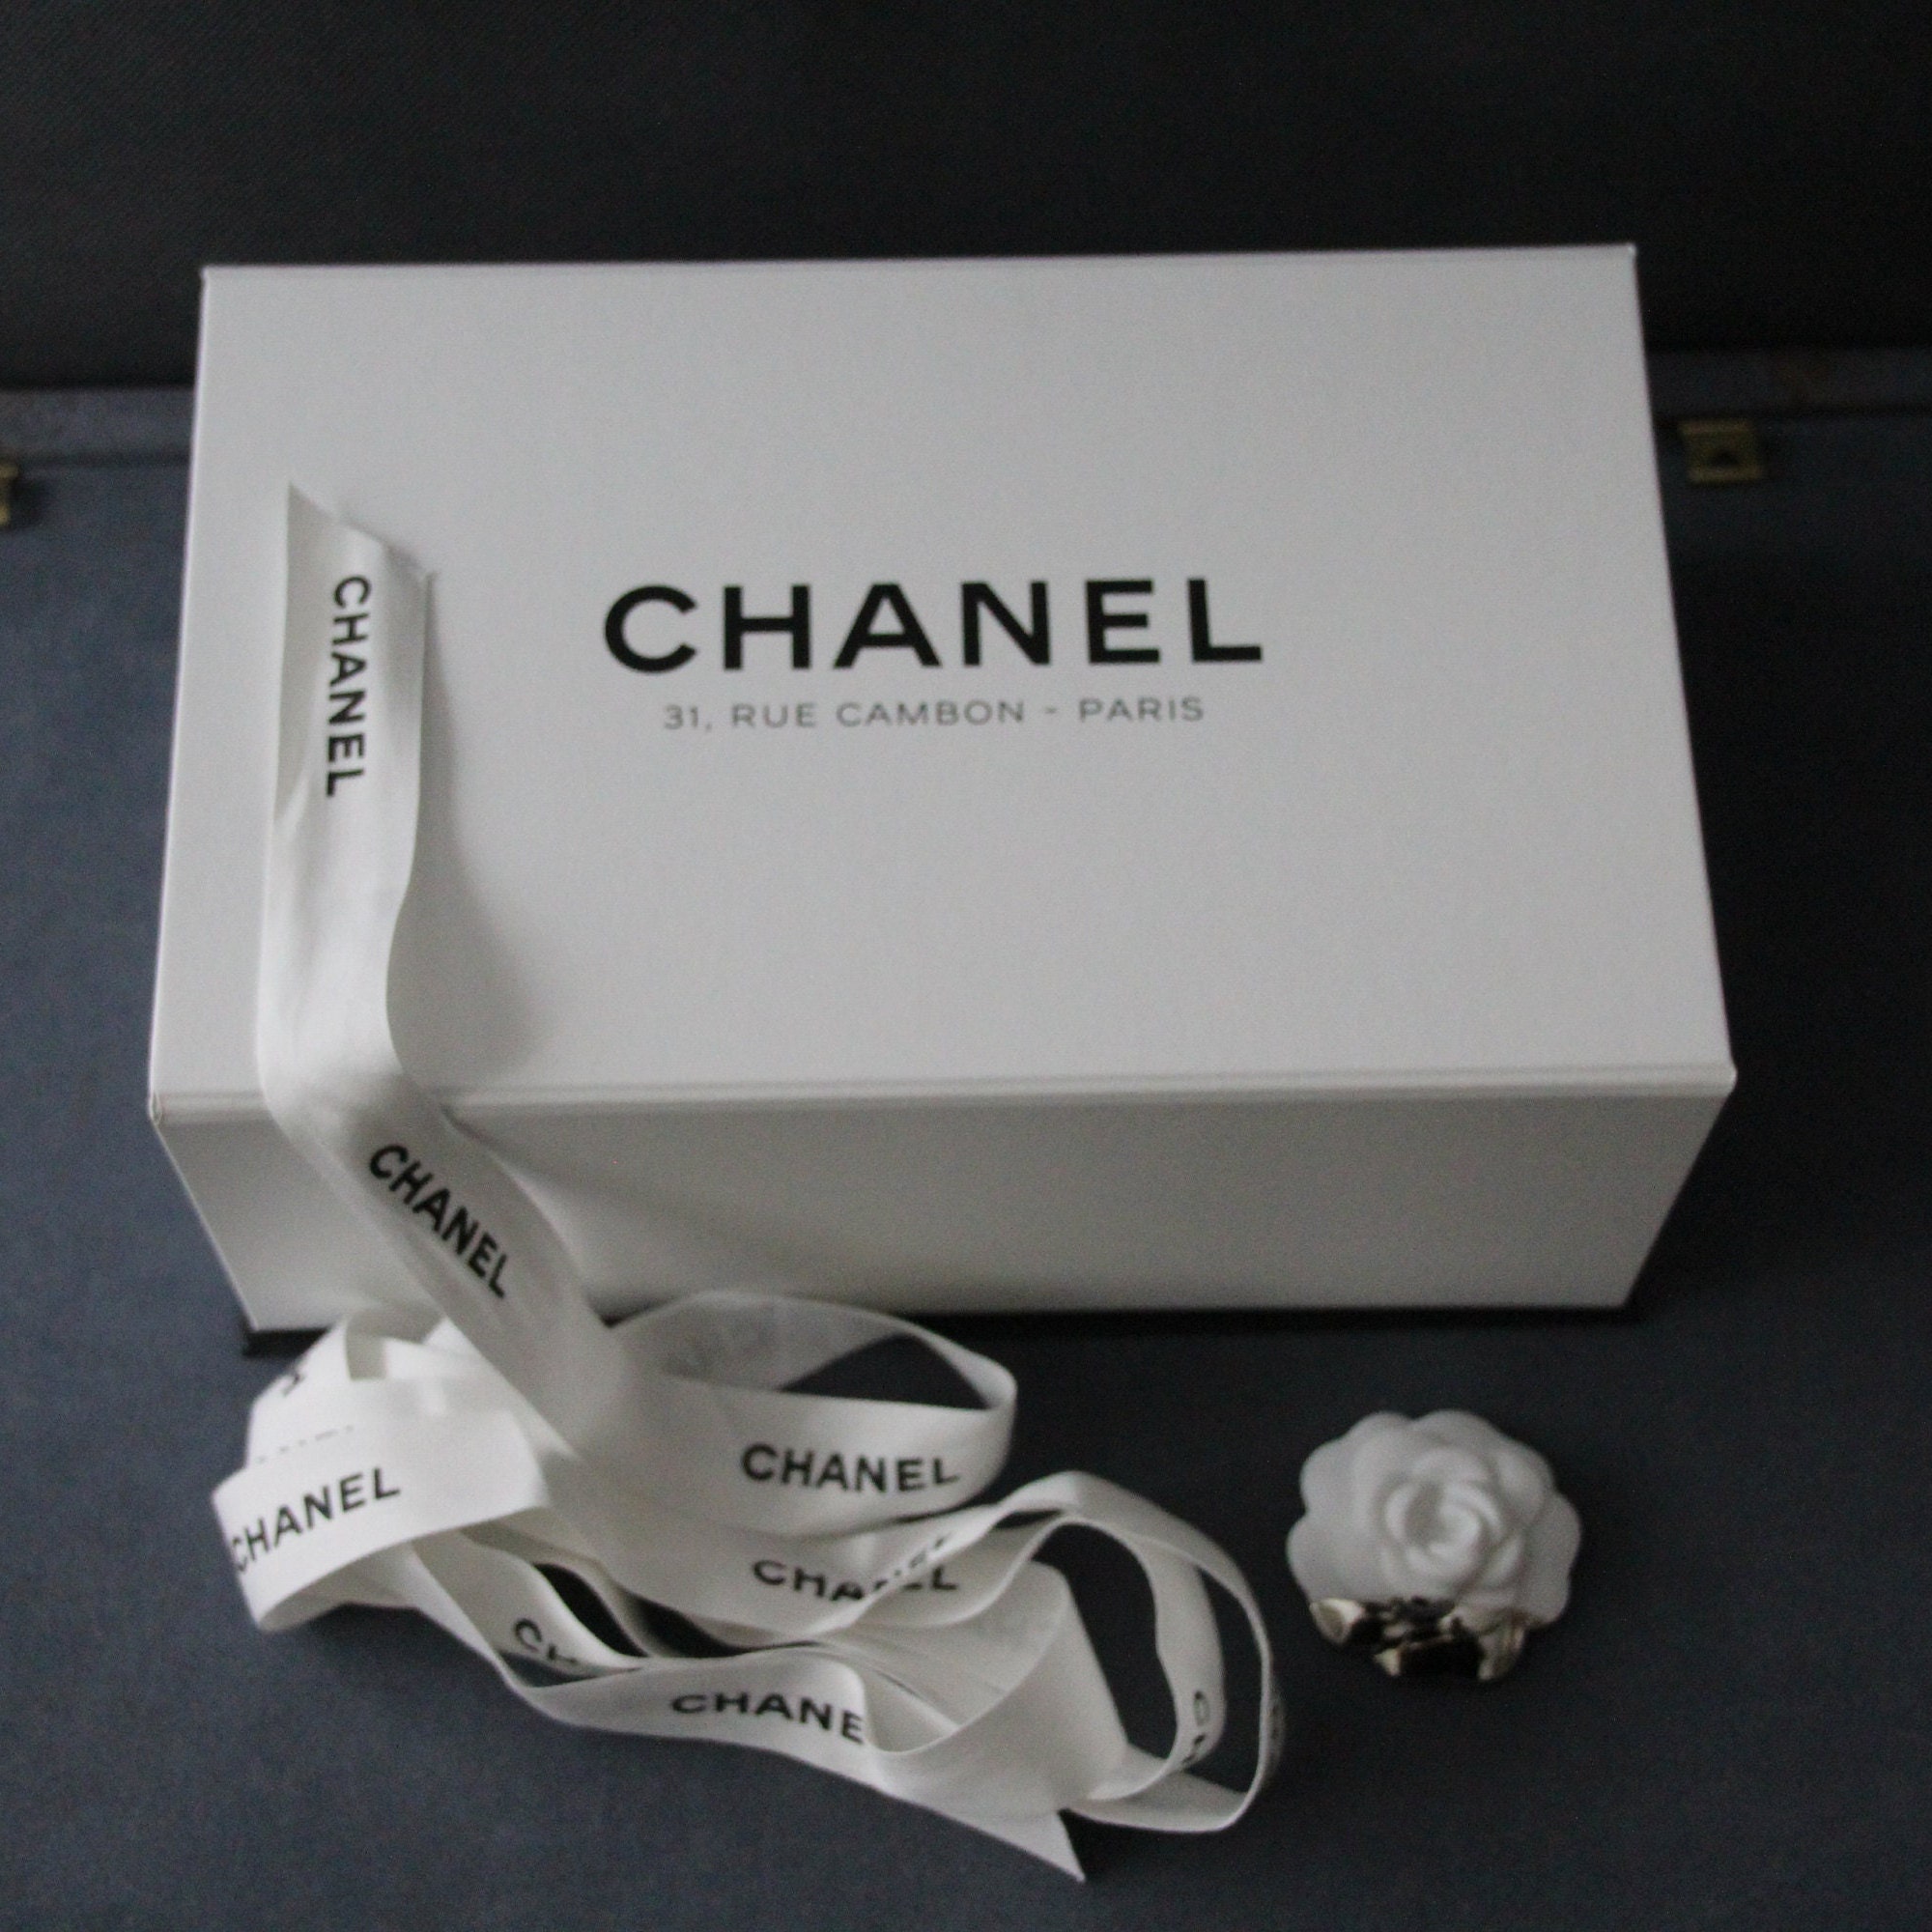 Chanel Paris White Box Small Bag Box Chanel Accessories Silk -  Finland